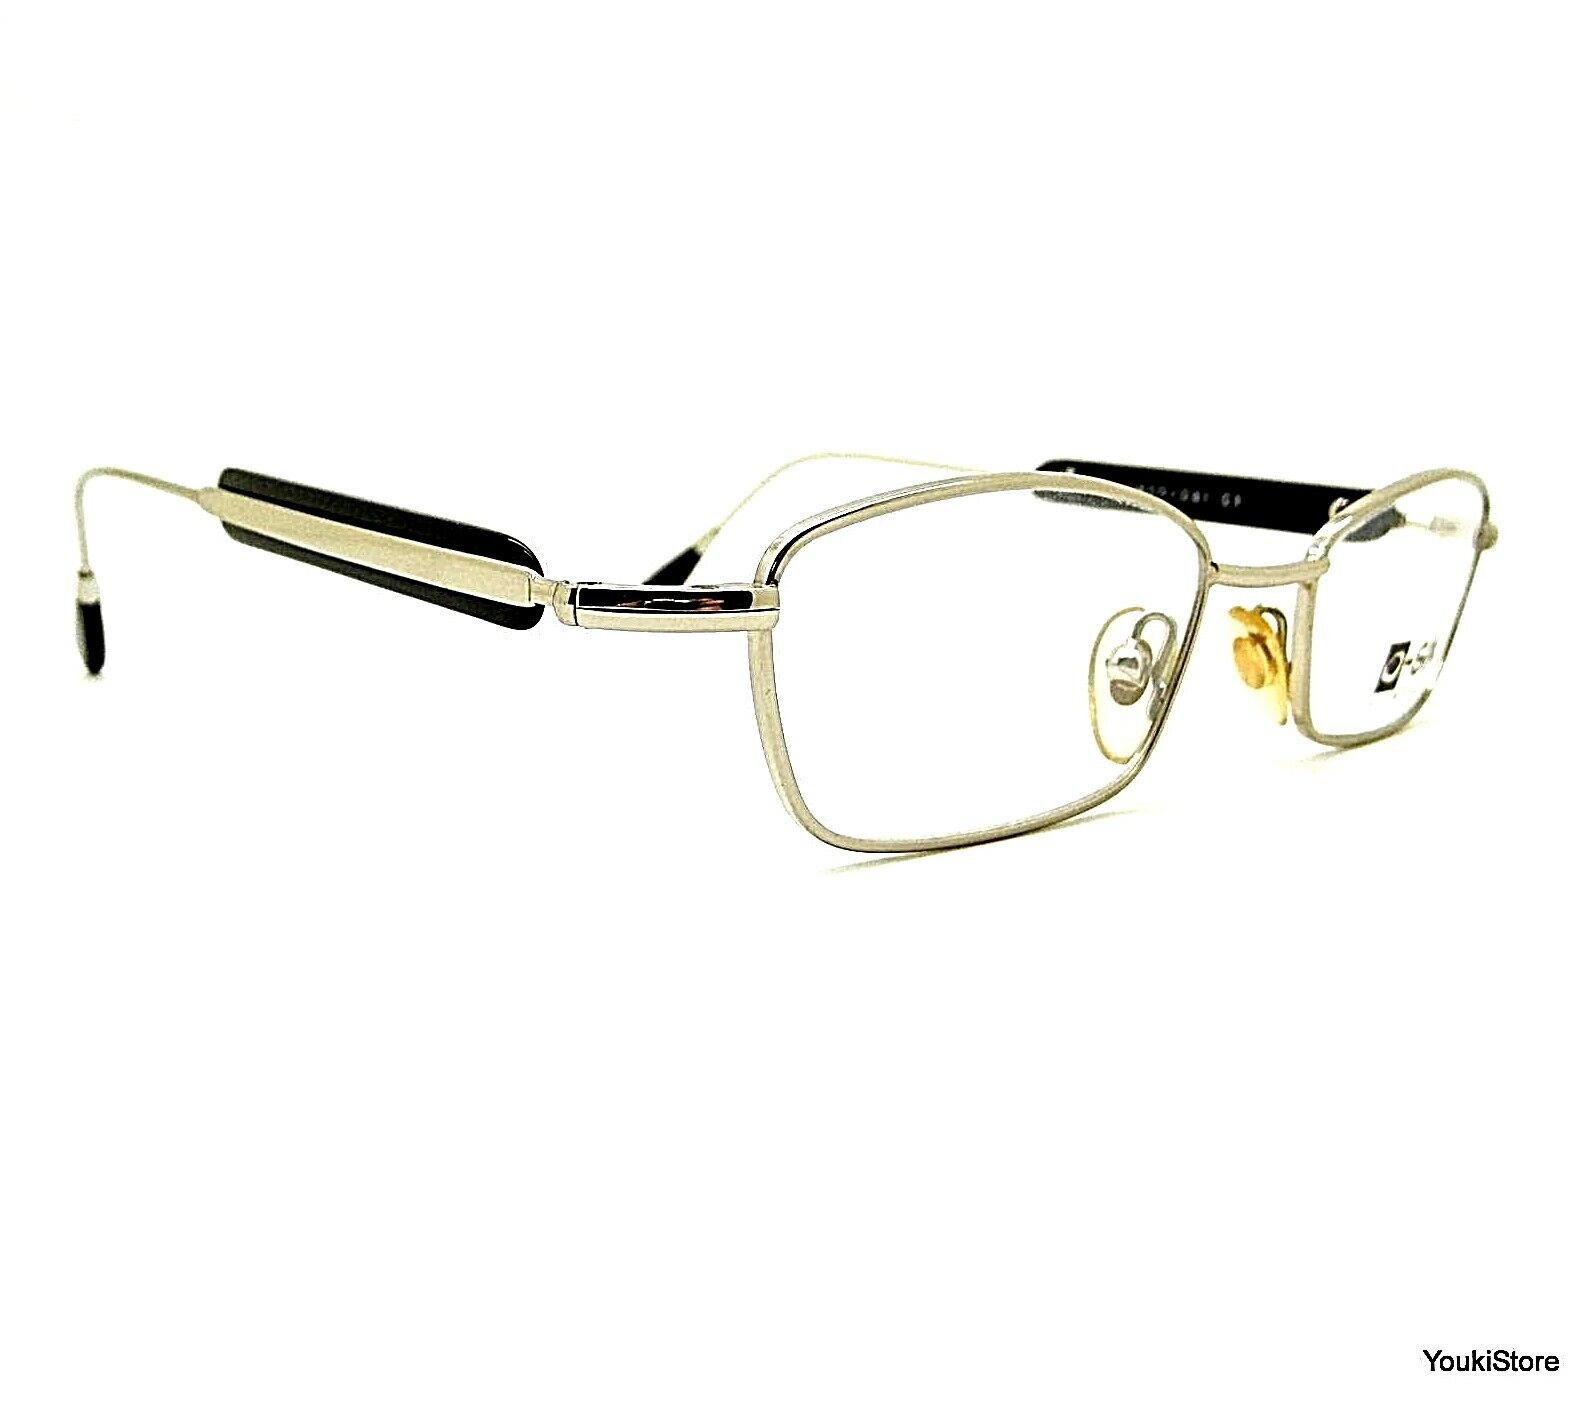 O-SIX GLASSES occhiali da vista mod. 081 C1 - HAND MADE IN ITALY CE! Nowy przyjazd, zapewnienie jakości